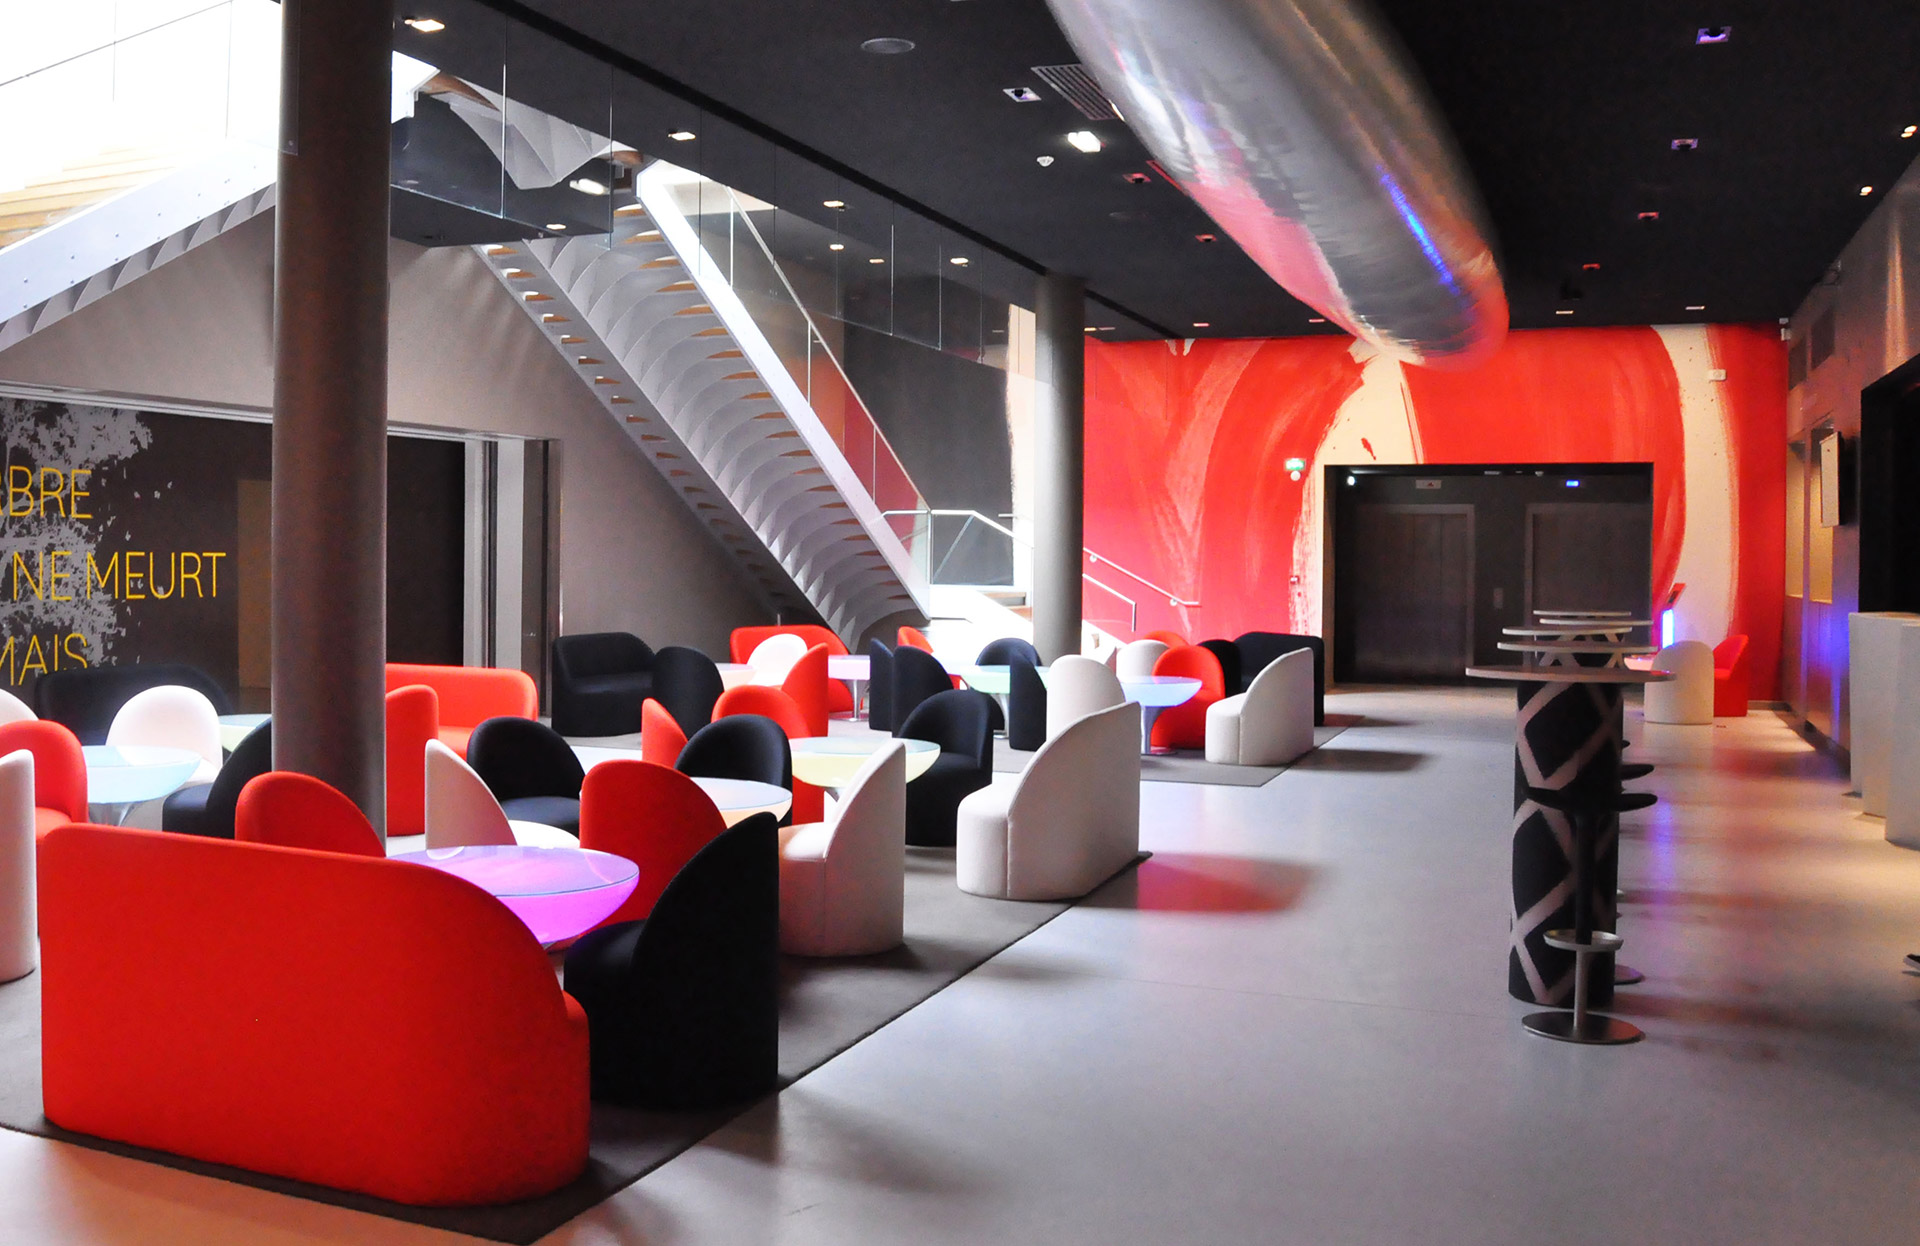 Accueil et espace bar/restauration d’un centre culturel par l’agence Borella Art Design